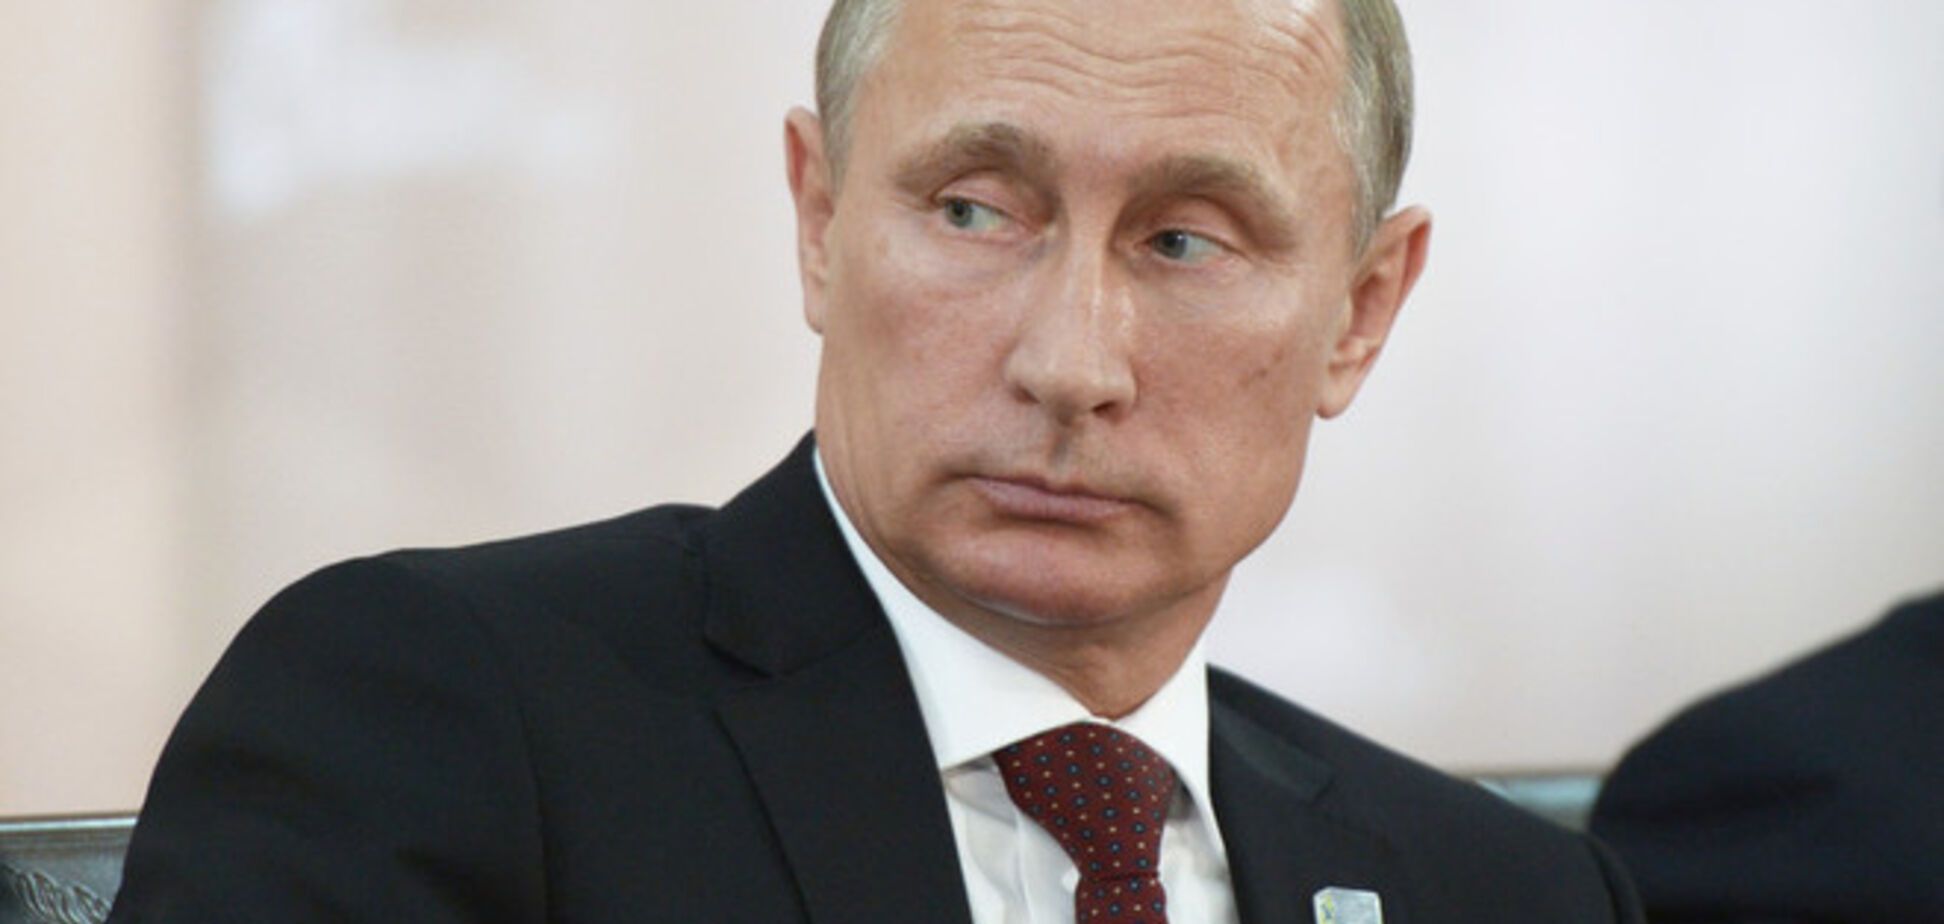 МИД Великобритании предупредил Путина: угрозы не останутся без ответа НАТО